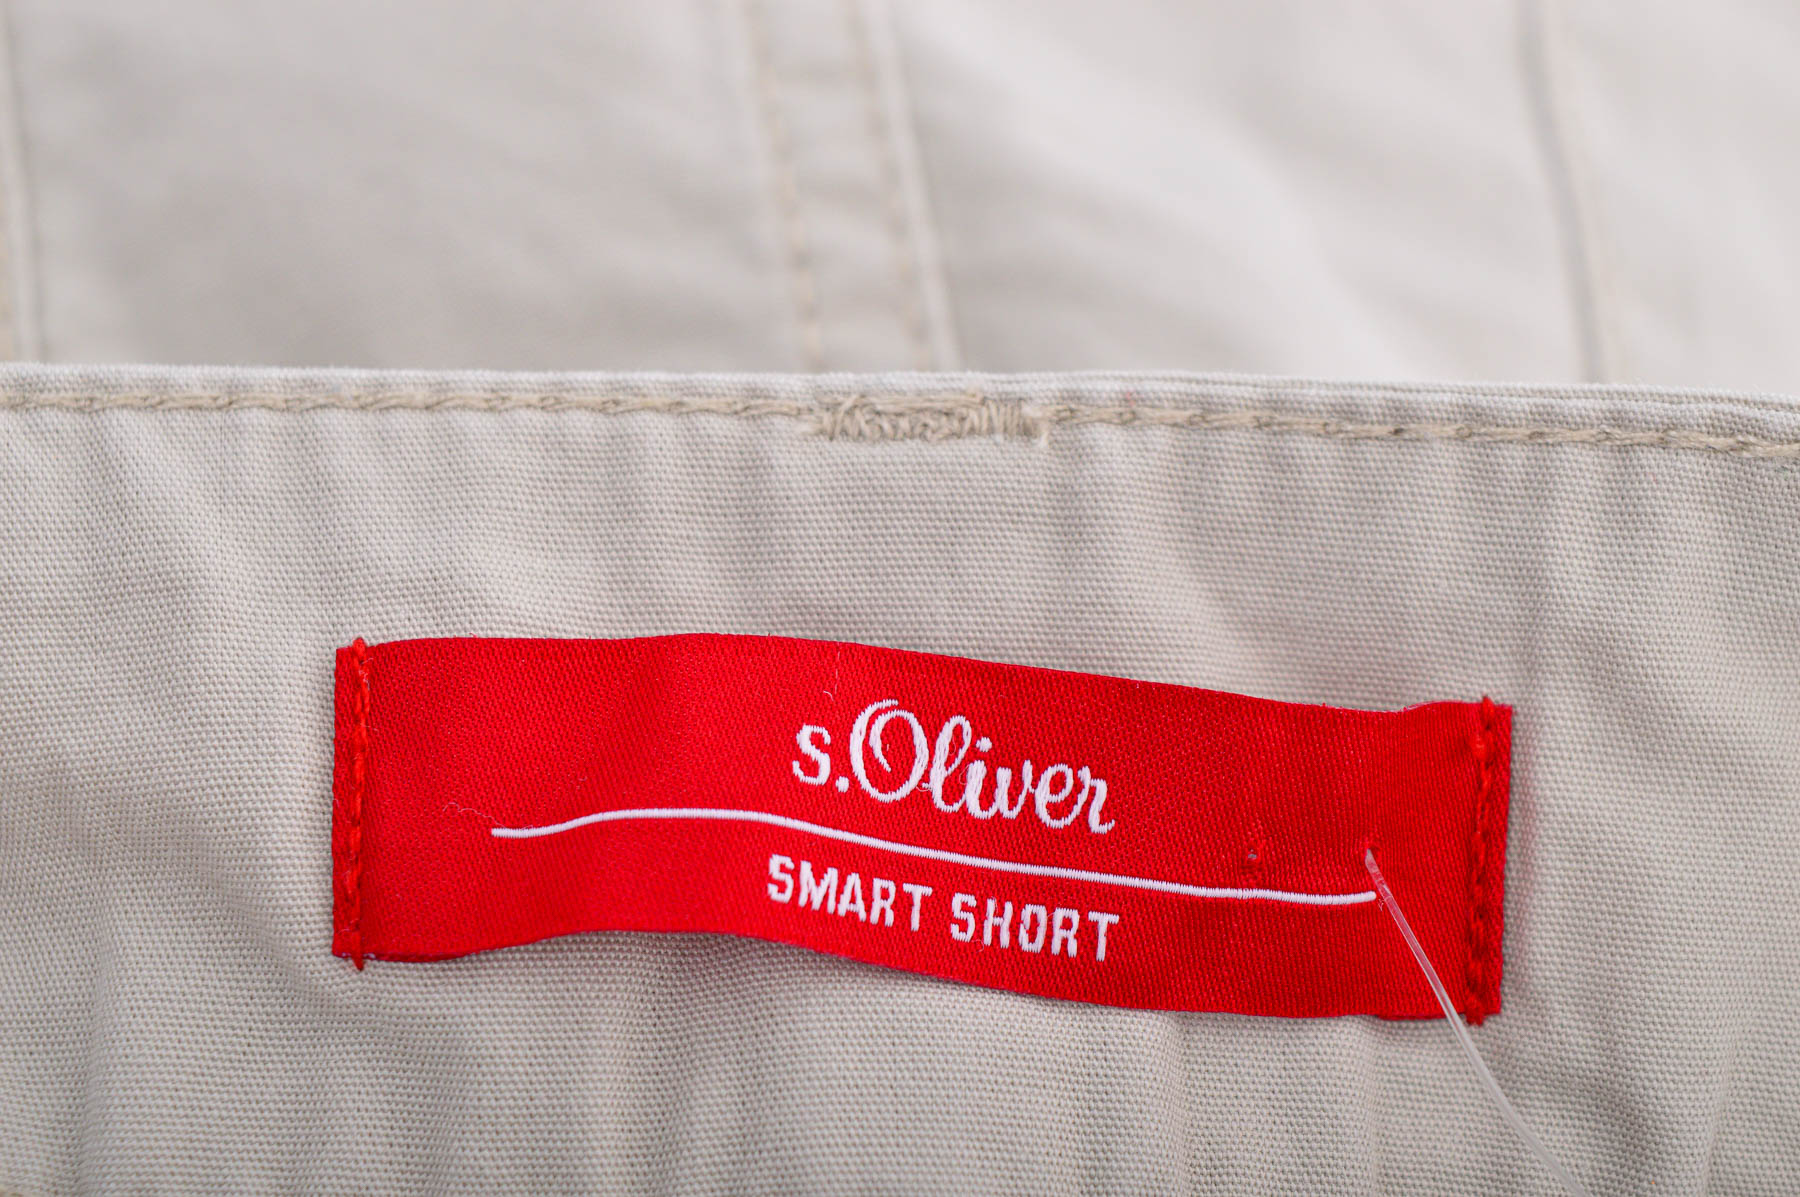 Female shorts - S.Oliver - 2